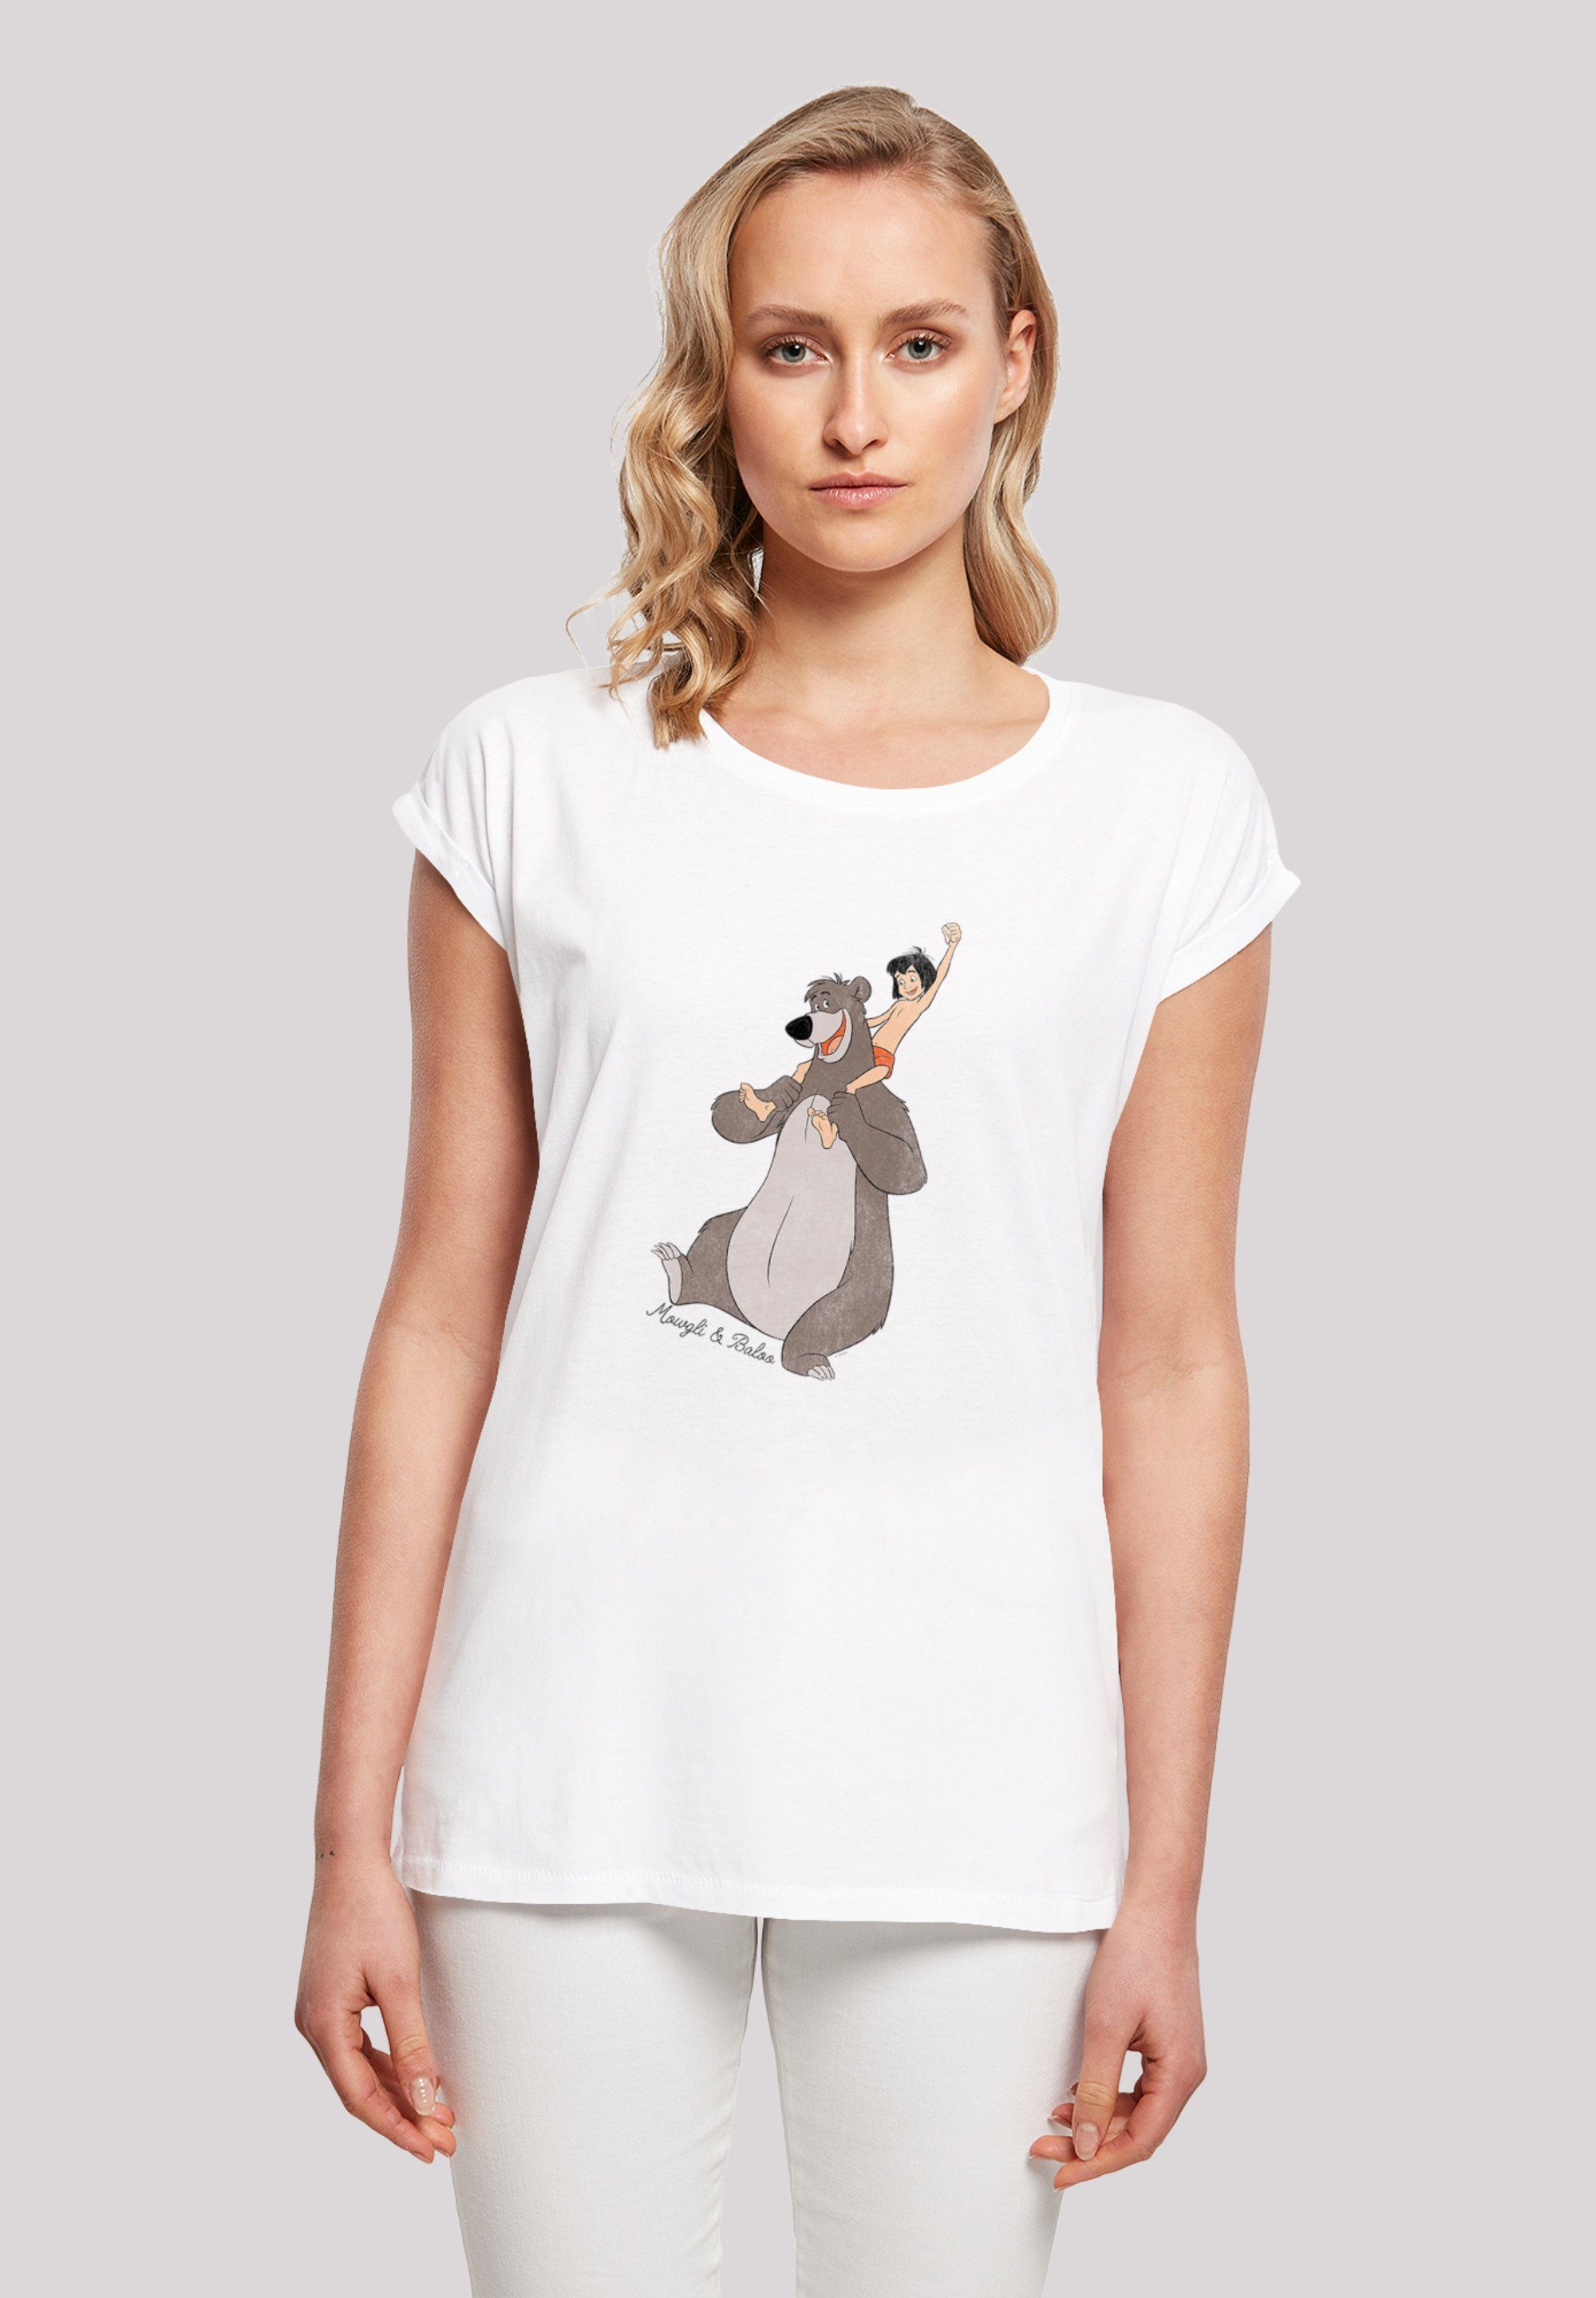 F4NT4STIC T-Shirt Dschungelbuch Mogli und Balu Print, Sehr weicher  Baumwollstoff mit hohem Tragekomfort | T-Shirts